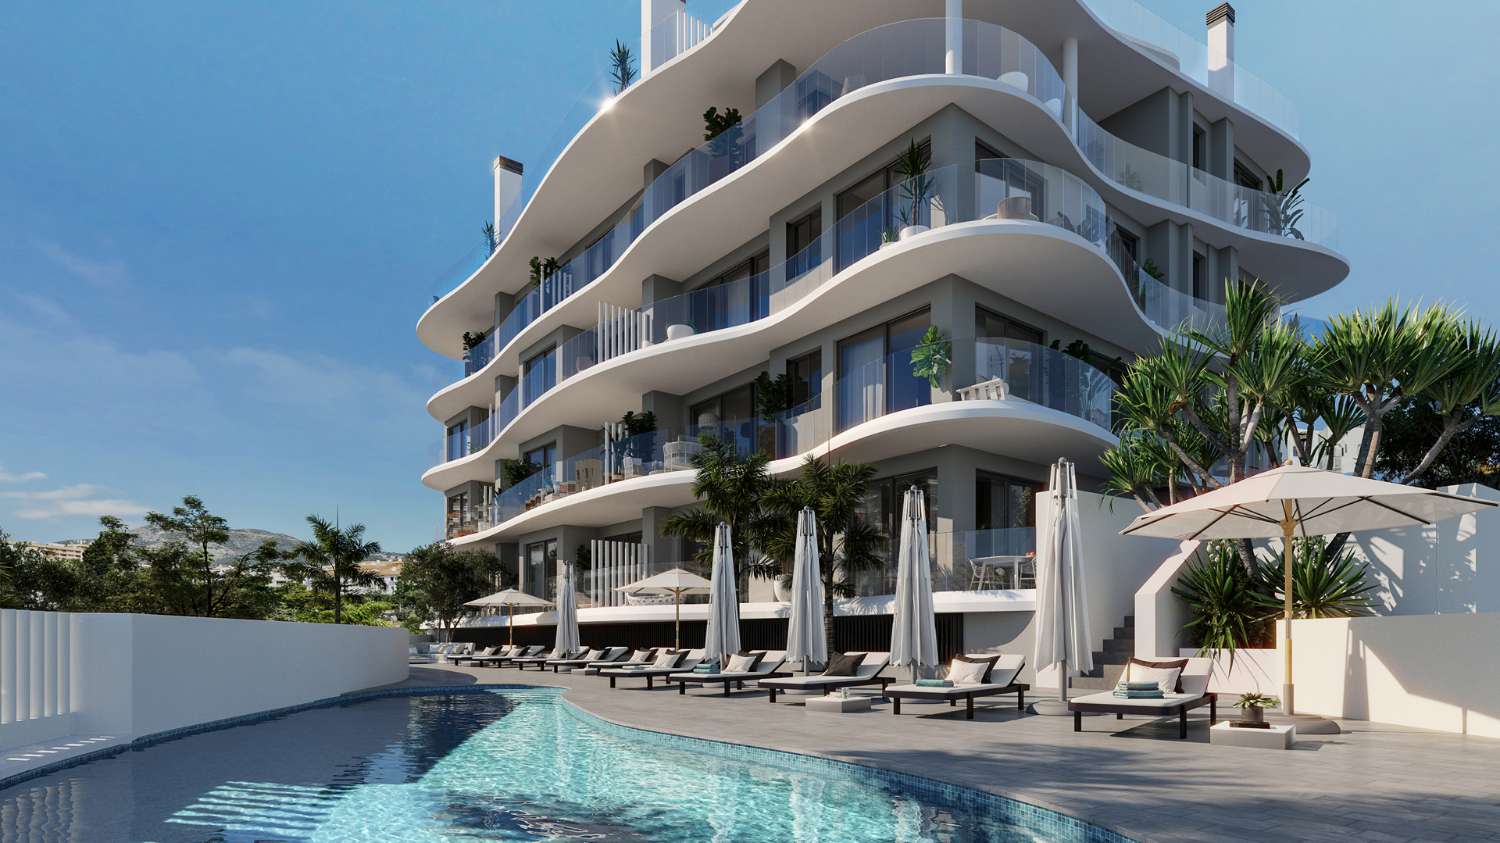 Penthouse met twee slaapkamers en groot terras van 92m2 gloednieuw met uitzicht op zee in Carihuela